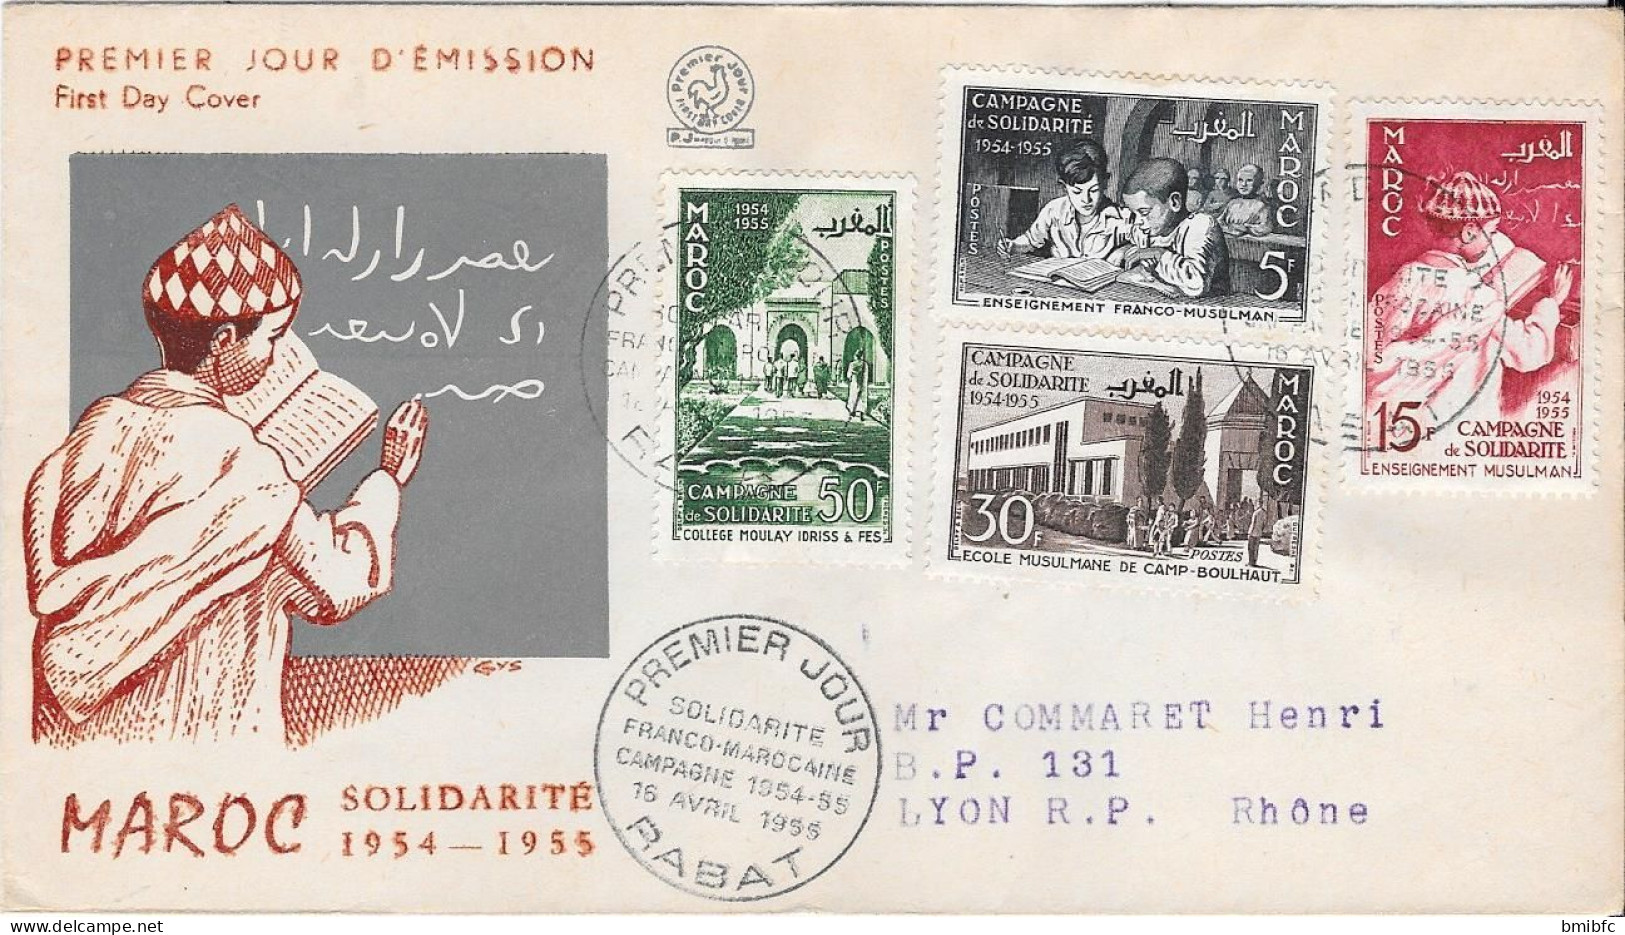 MAROC SOLIDARITÉ 1954-1955 - Marruecos (1956-...)